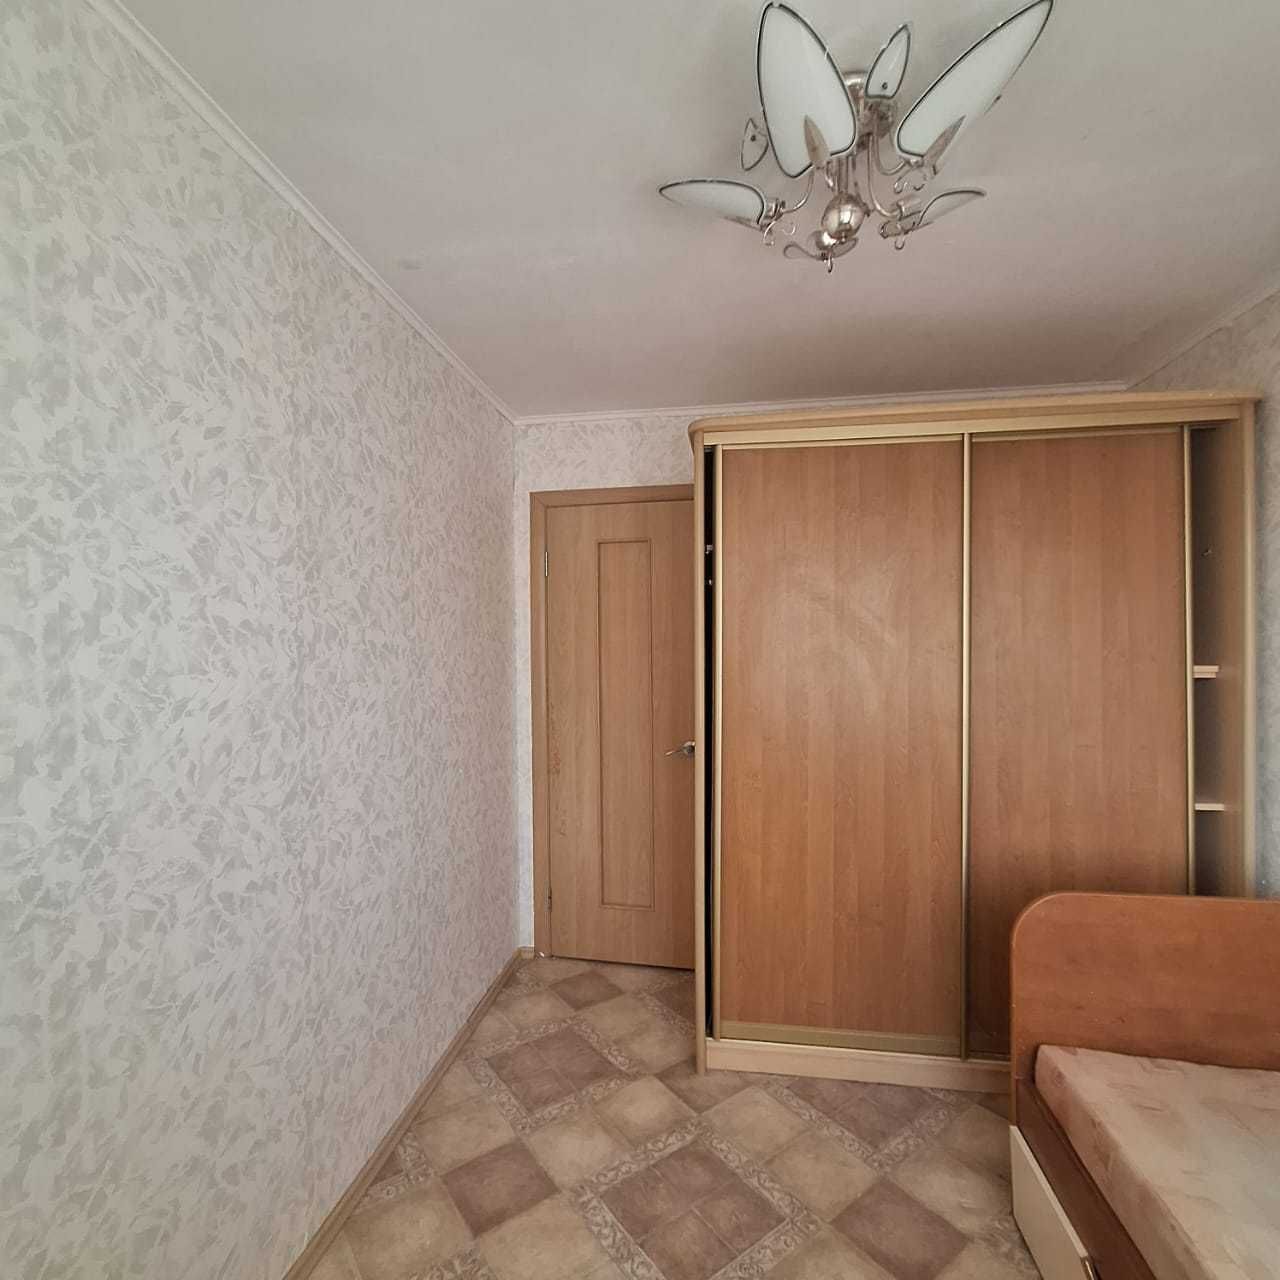 3х комнатная квартира по улице Баймагамбетова д.179